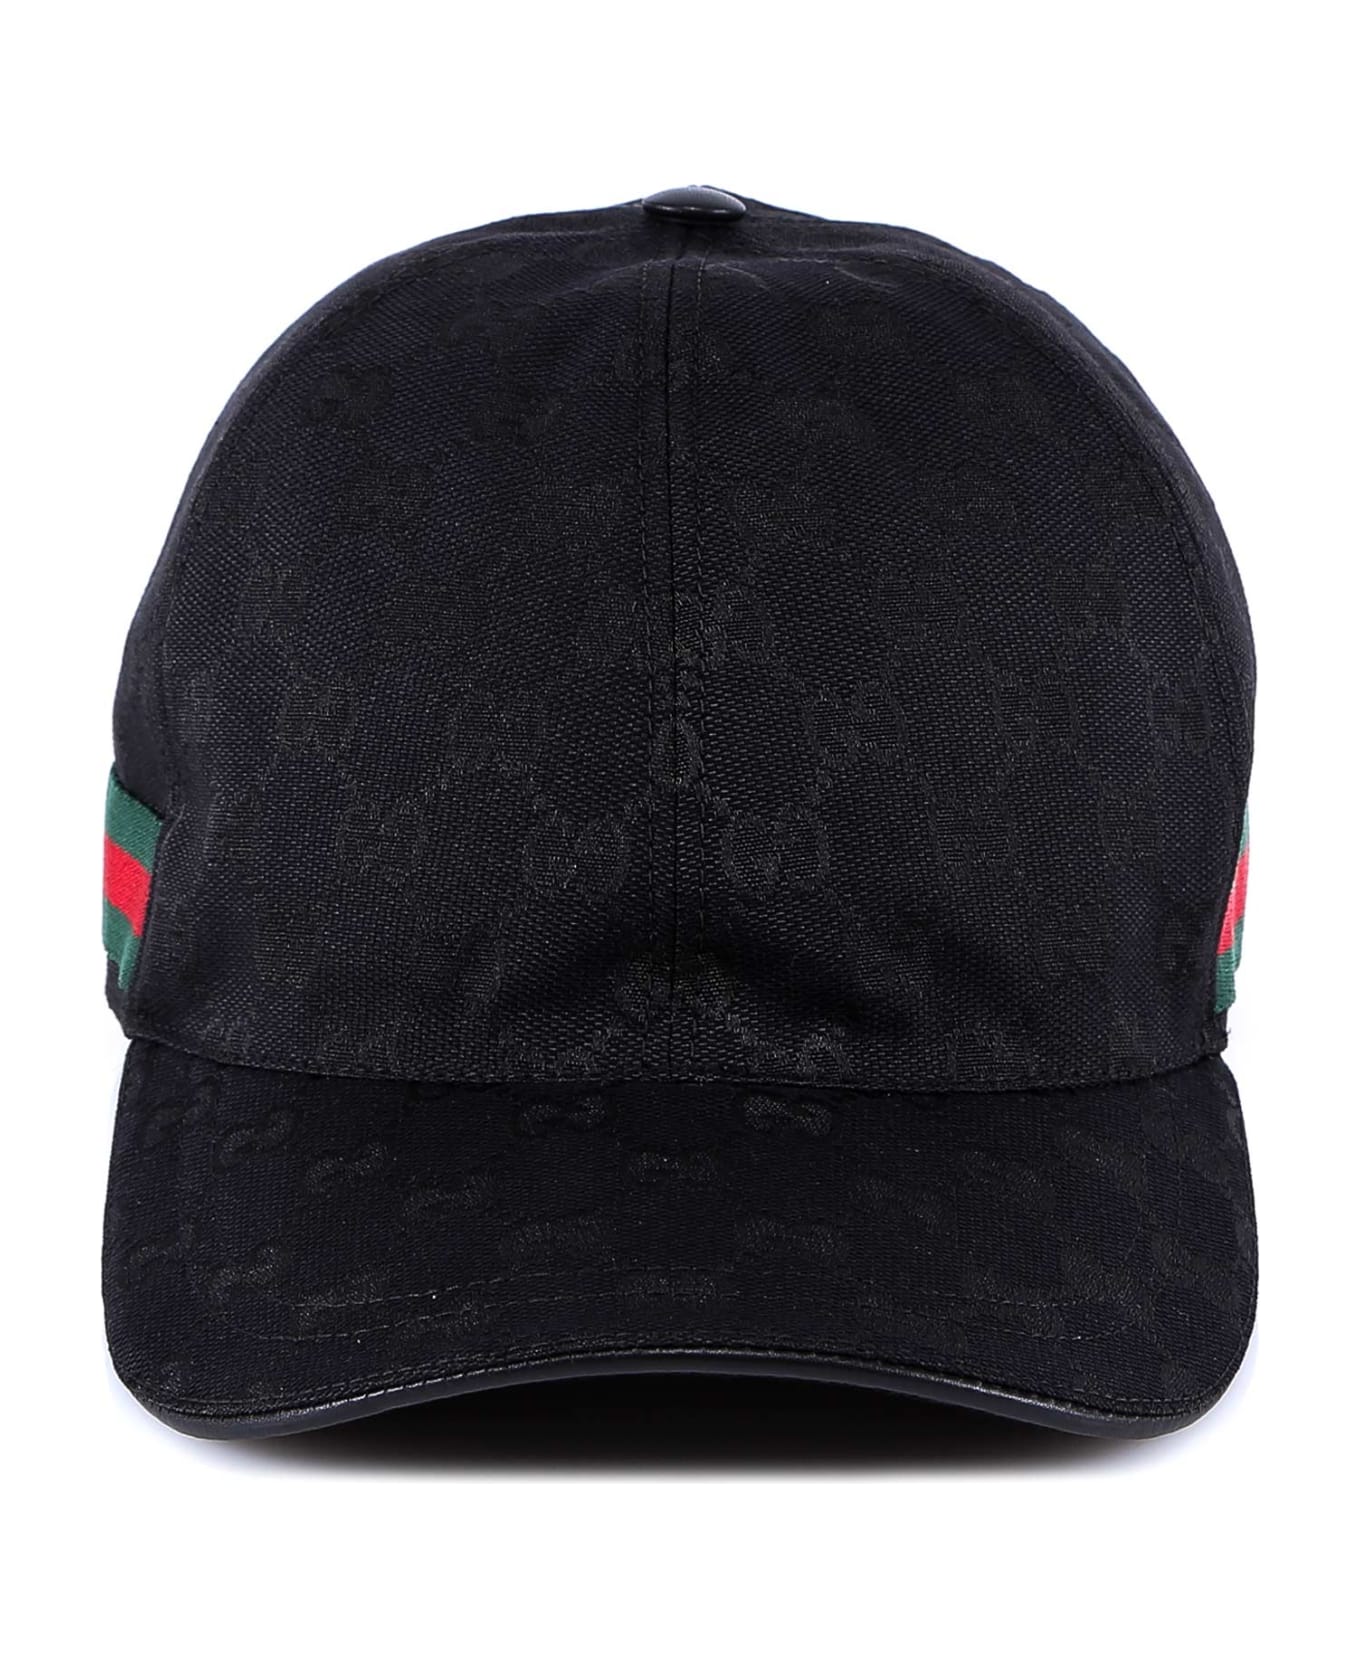 Gucci Hat - Black 帽子